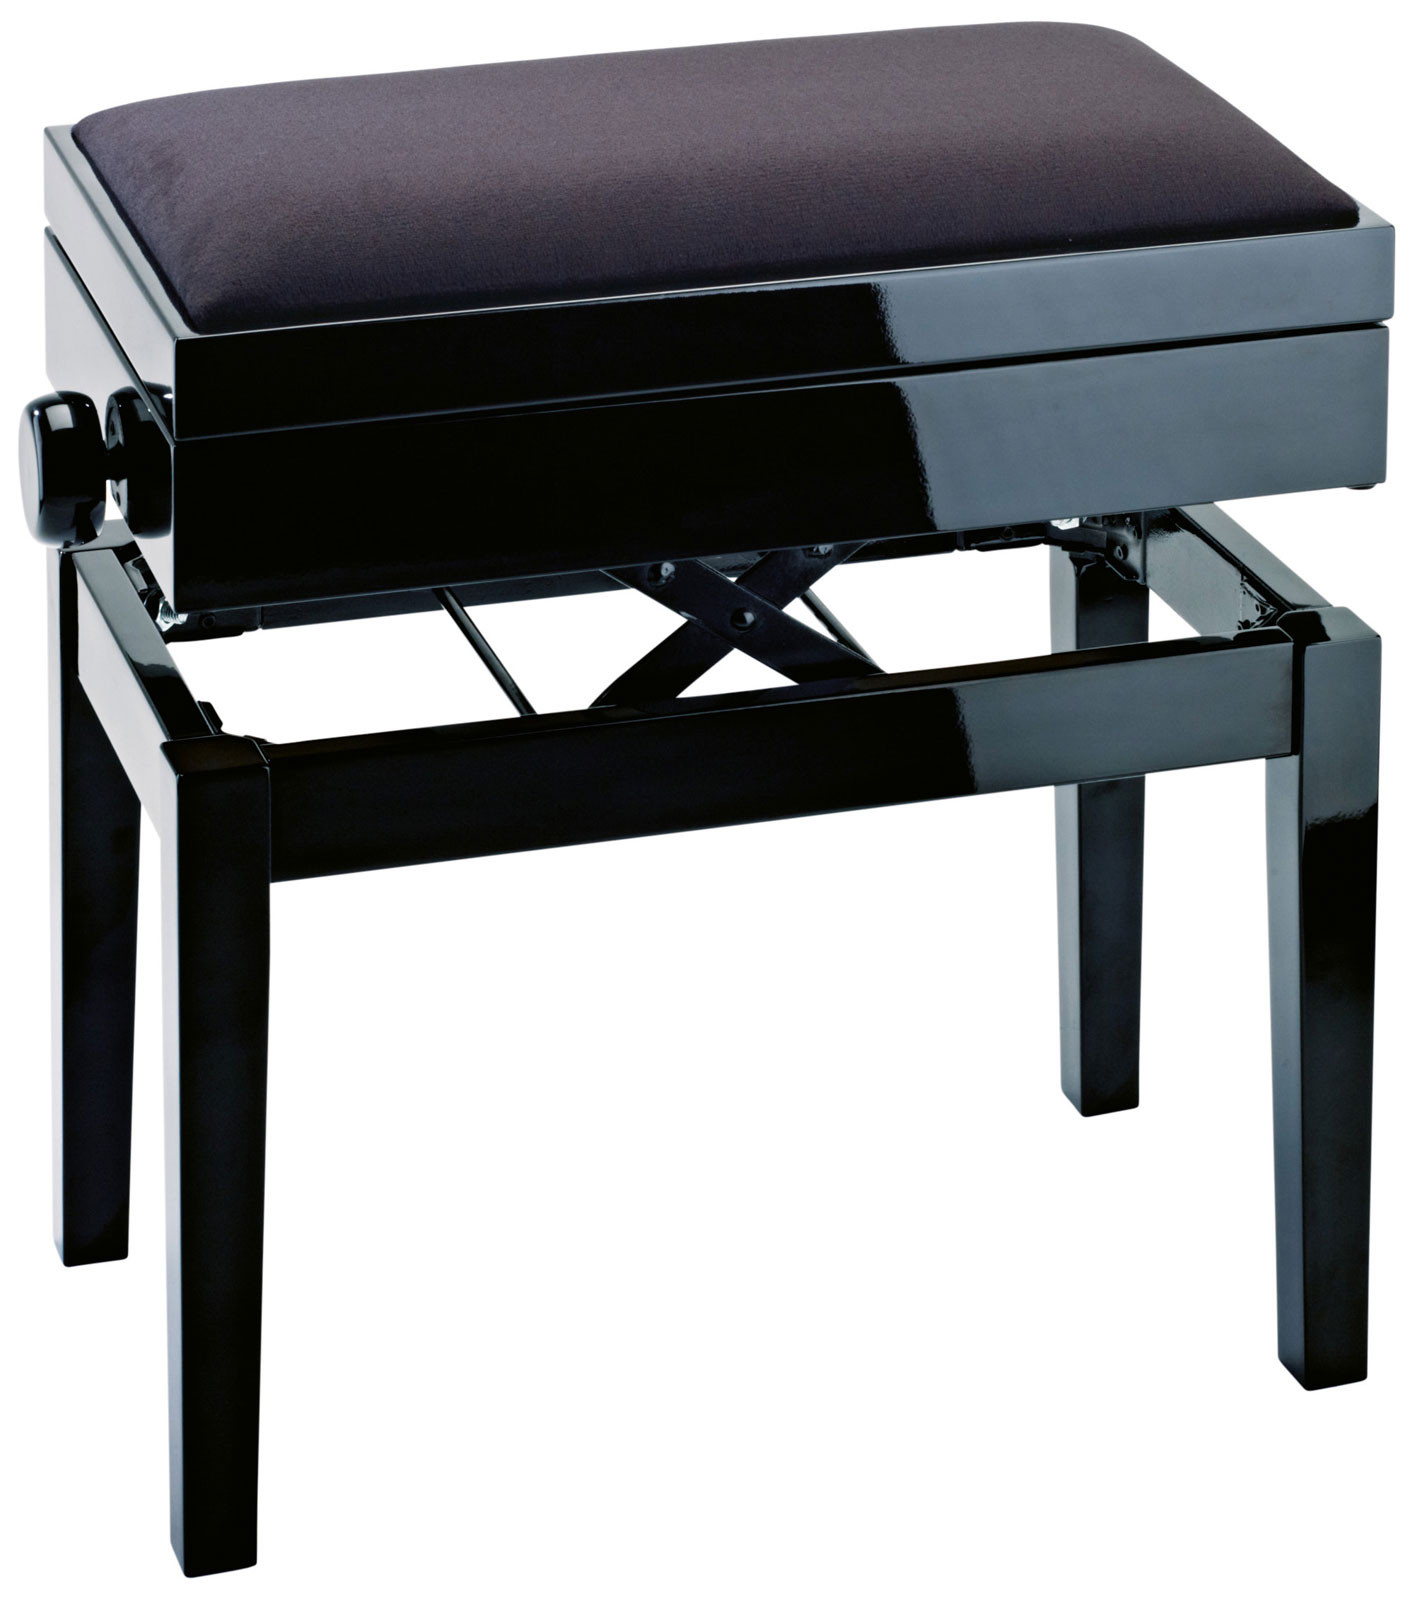 Black Velvet Storage Bench
 Konig & Meyer Piano Bench Black Velvet With Storage